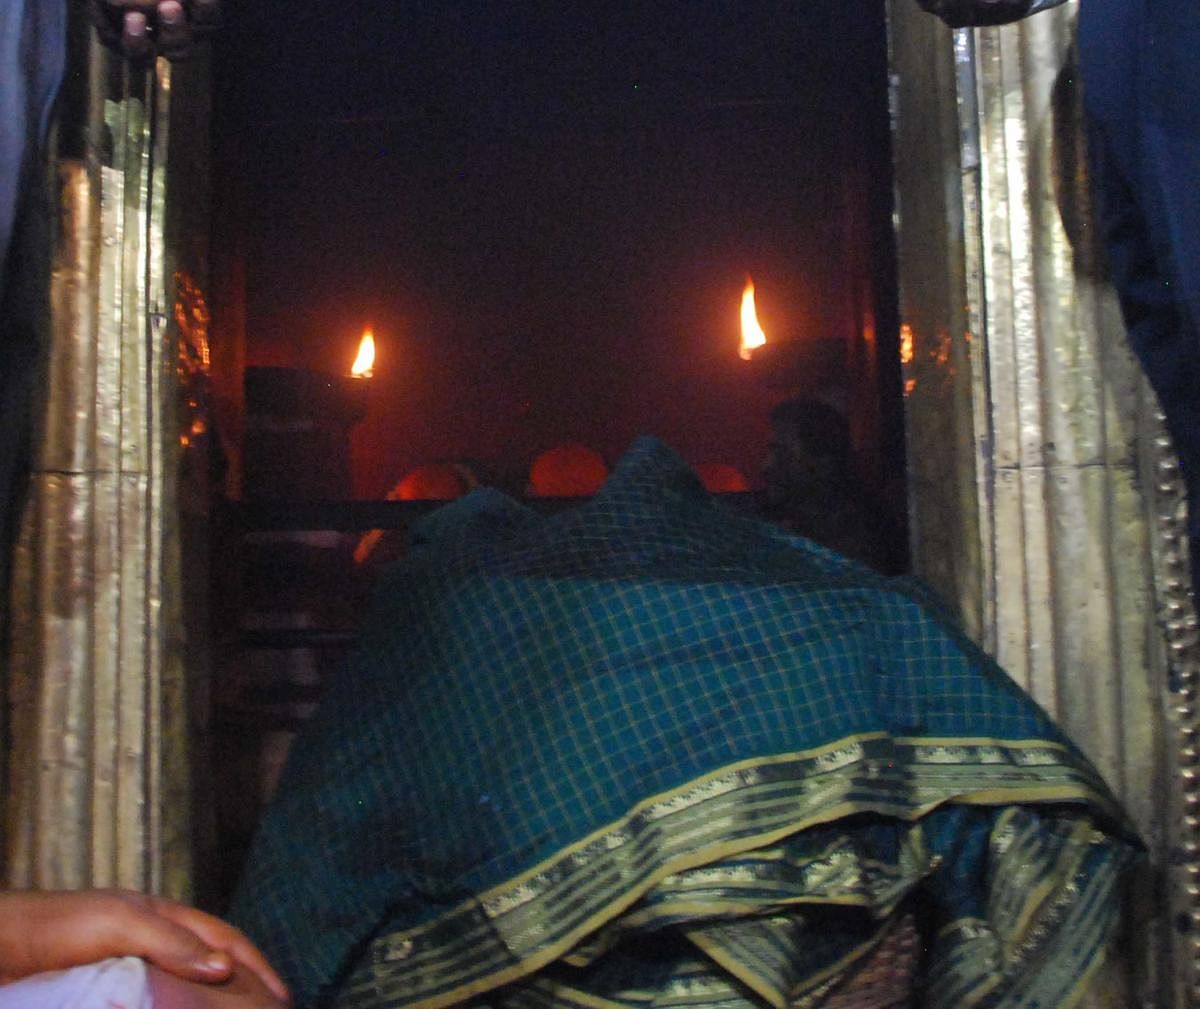 ಹಾಸನಾಂಬೆ ದೇವಾಲಯದ ಬಾಗಿಲು ಮುಚ್ಚುವ ಮುನ್ನ ದೀಪ ಹಚ್ಚಿರುವುದು